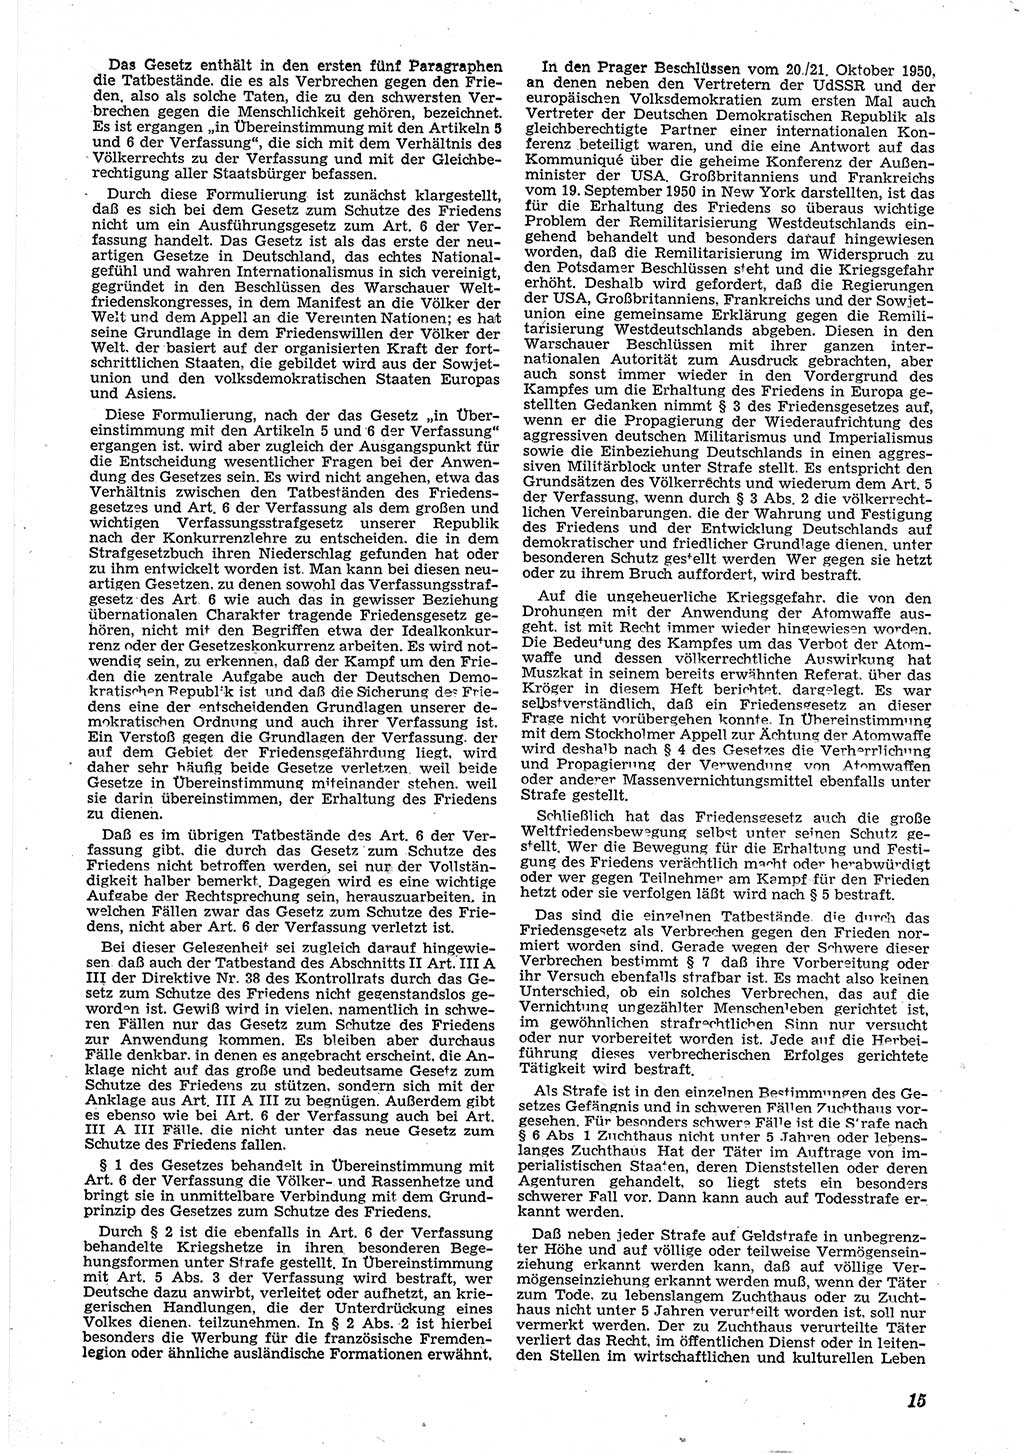 Neue Justiz (NJ), Zeitschrift für Recht und Rechtswissenschaft [Deutsche Demokratische Republik (DDR)], 5. Jahrgang 1951, Seite 15 (NJ DDR 1951, S. 15)